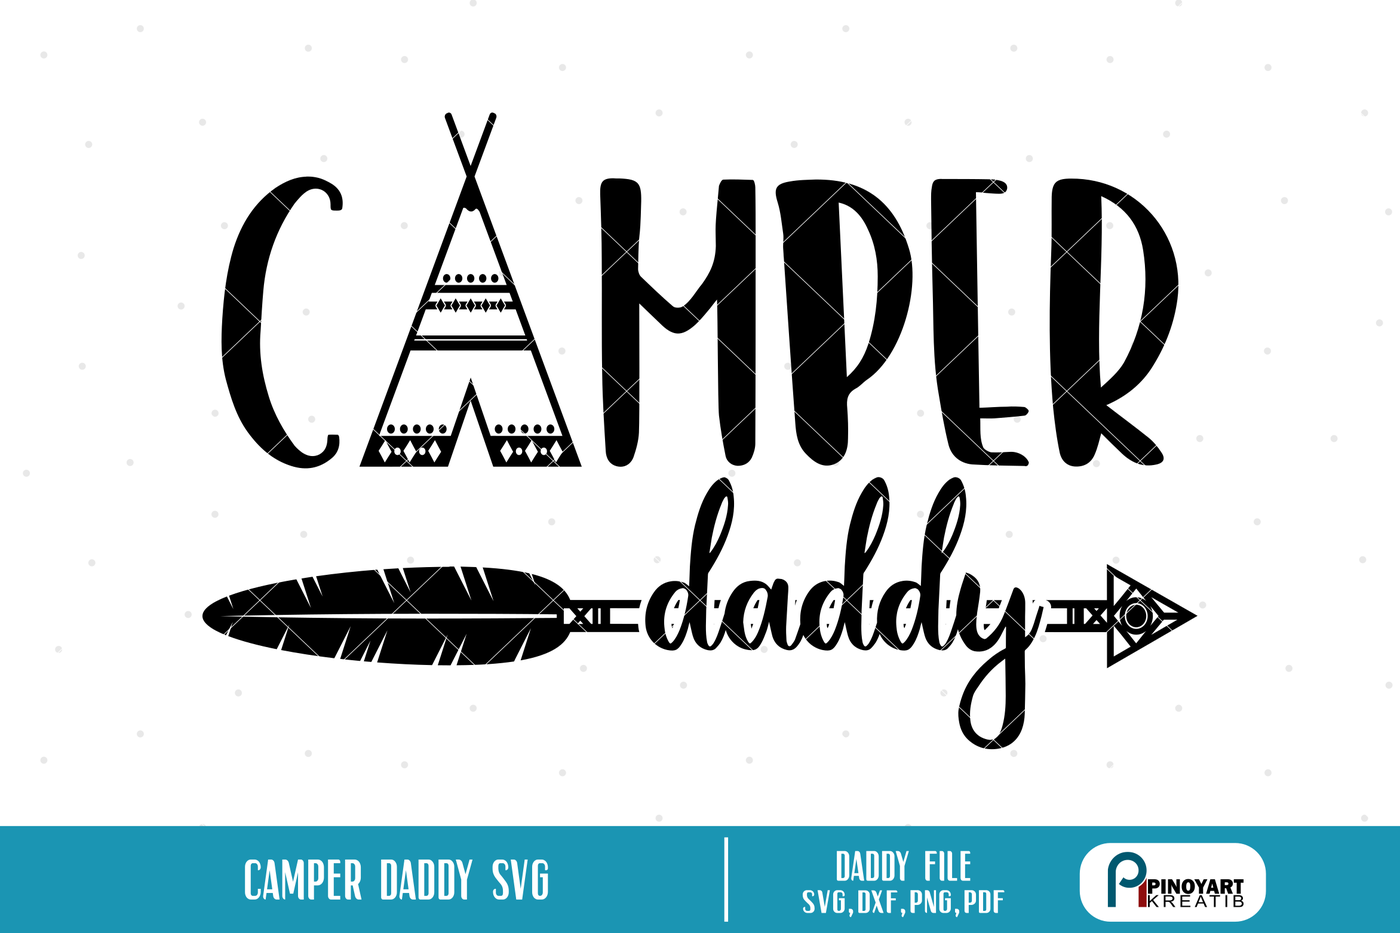 Download camper daddy svg,daddy svg,camper svg,camping svg file ...